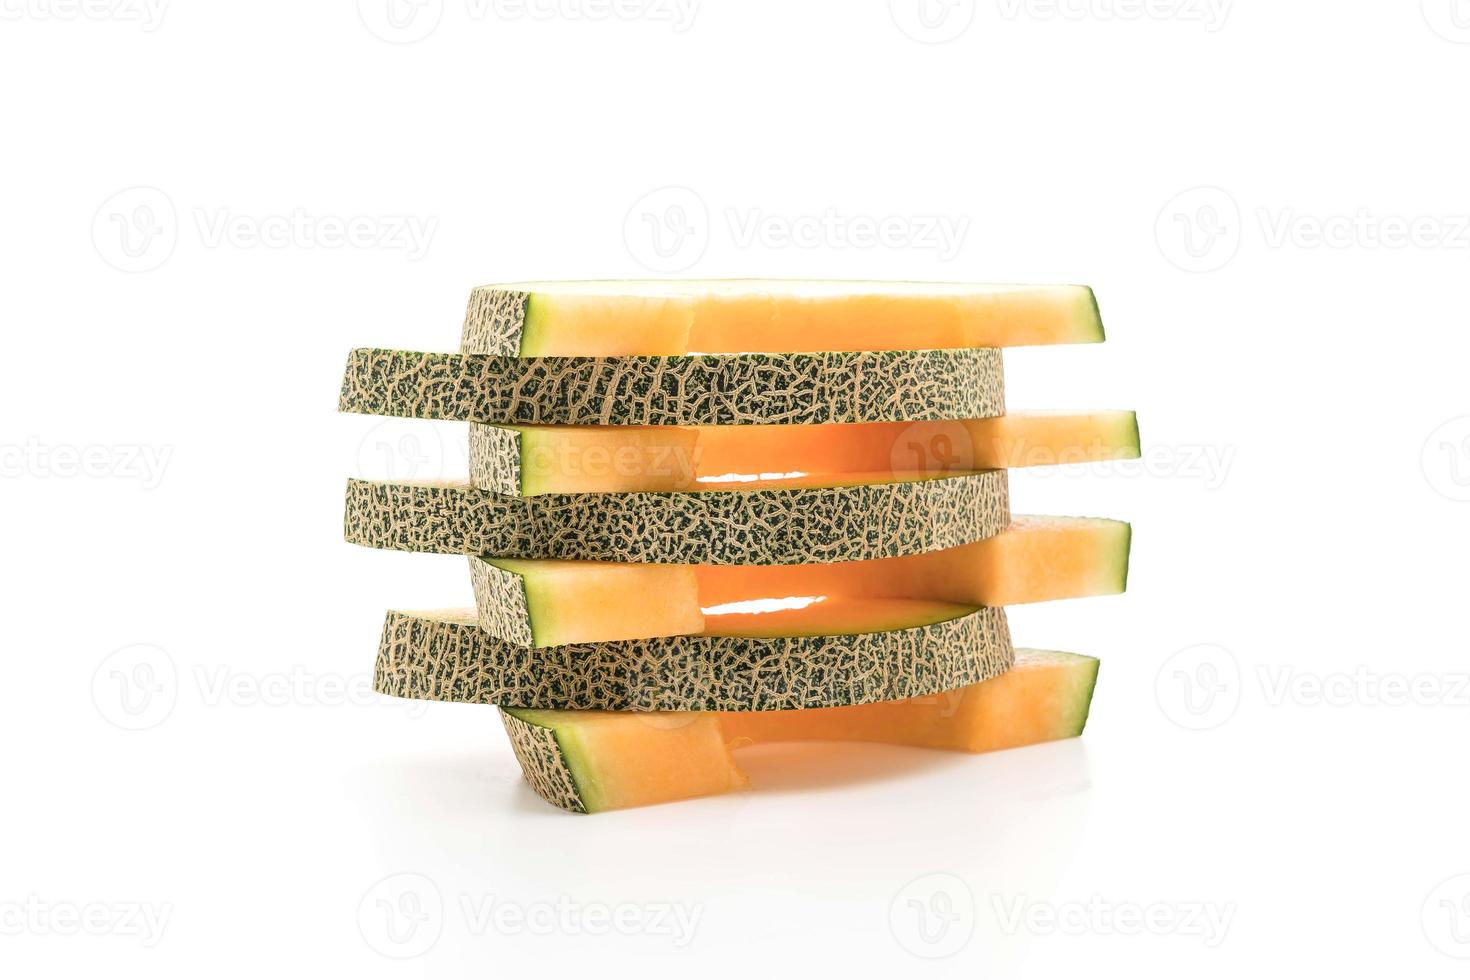 melone cantalupo su sfondo bianco foto